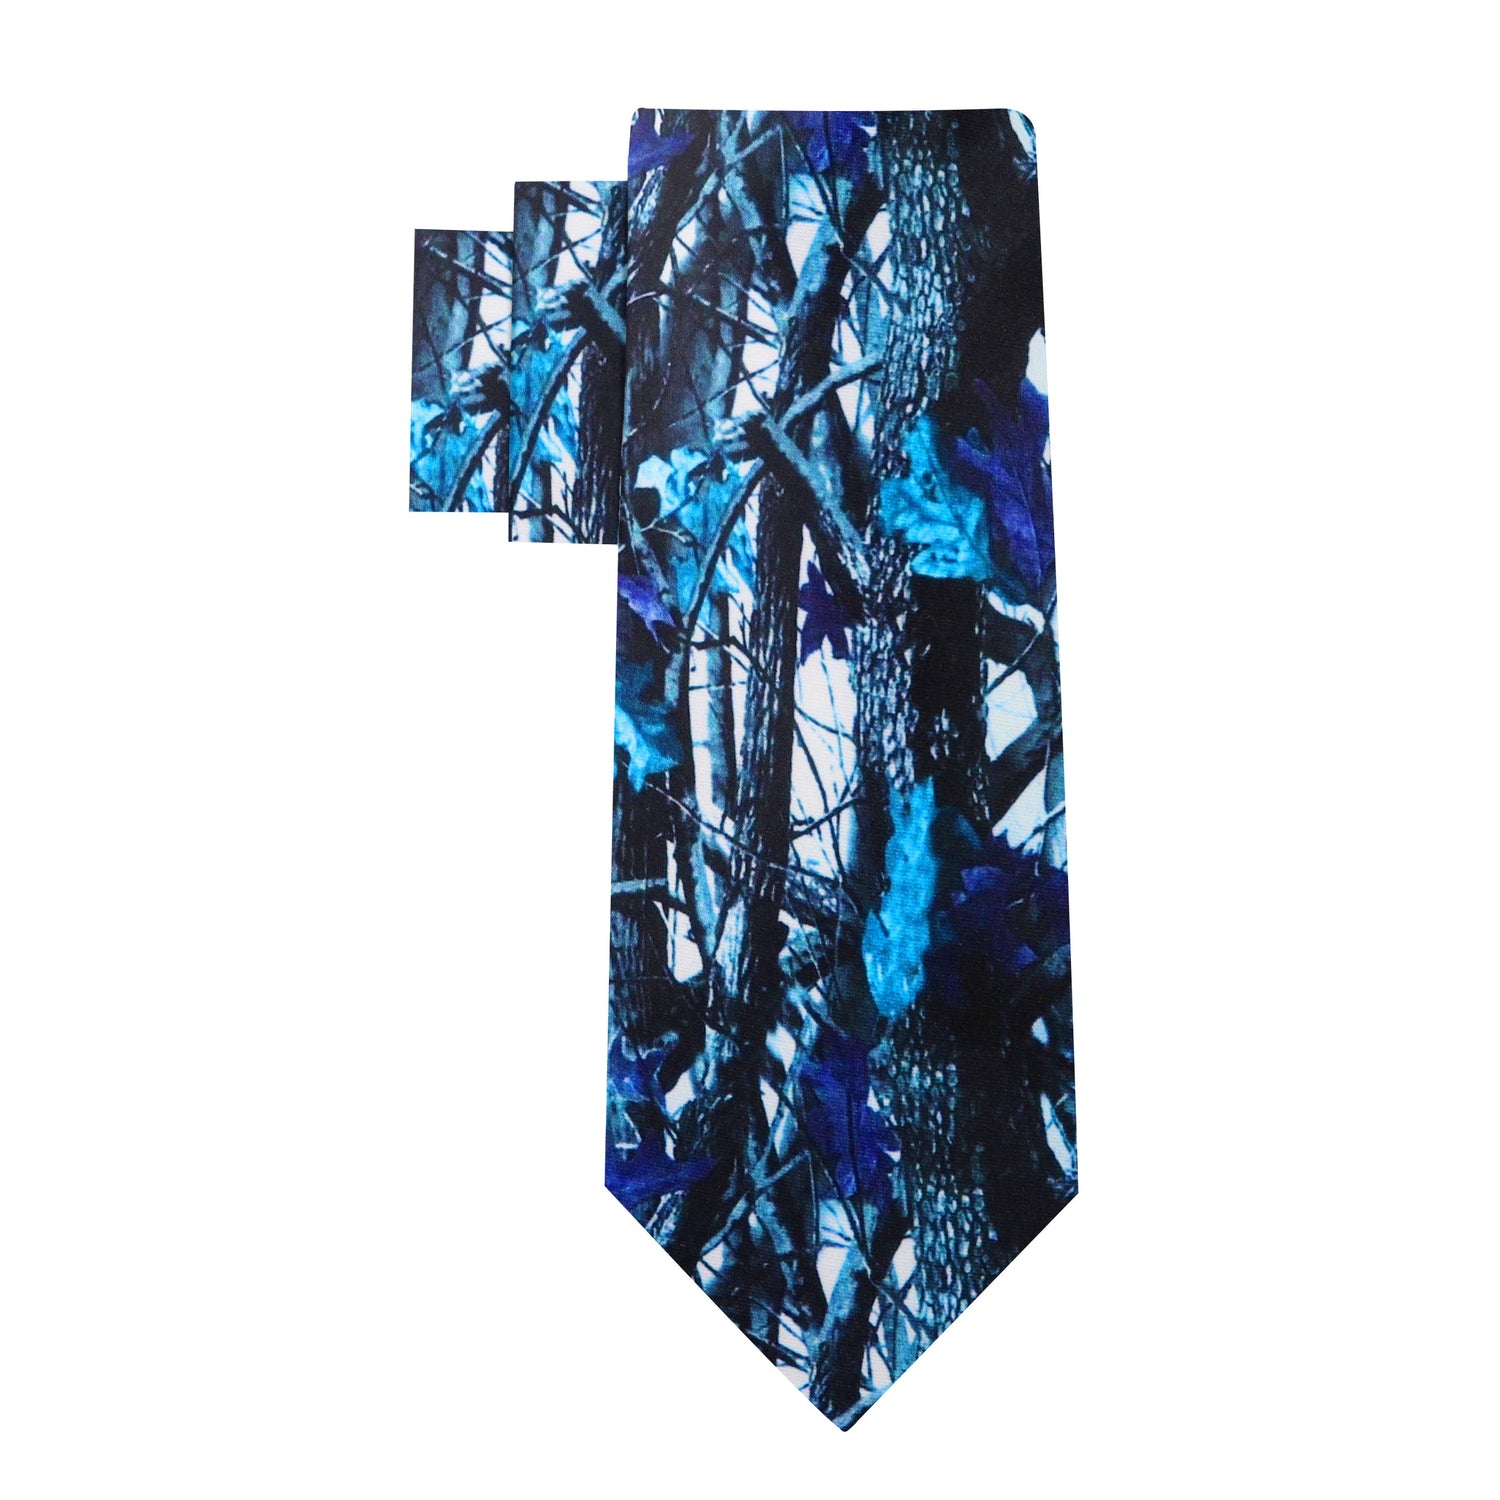 Alt View: Blue Camouflage Necktie